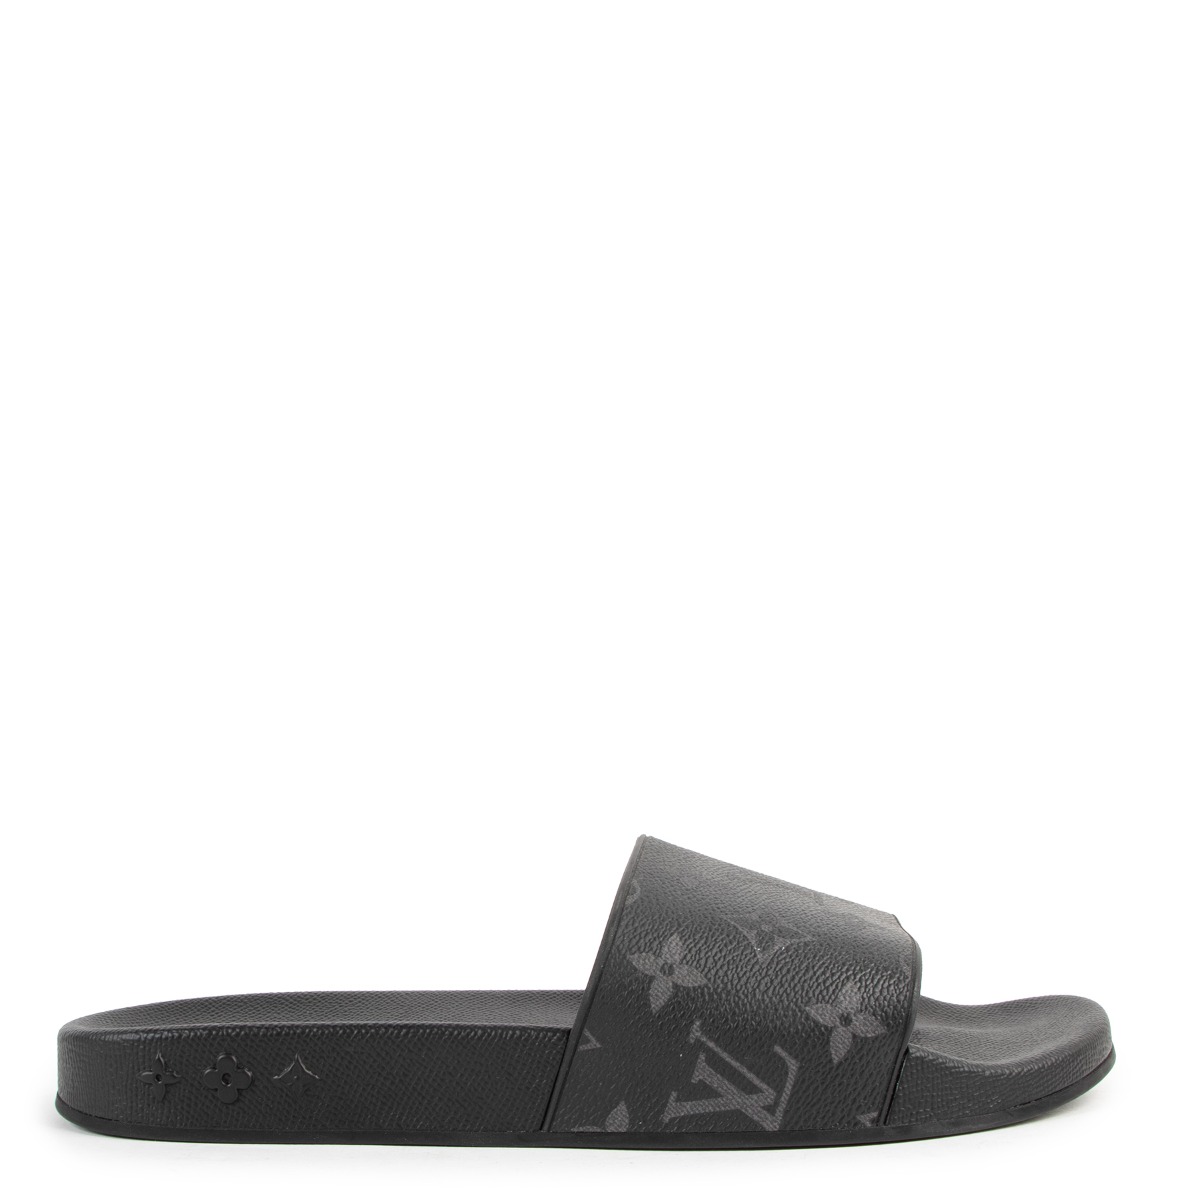 Louis Vuitton Waterfront Mule Black Slides! , Super